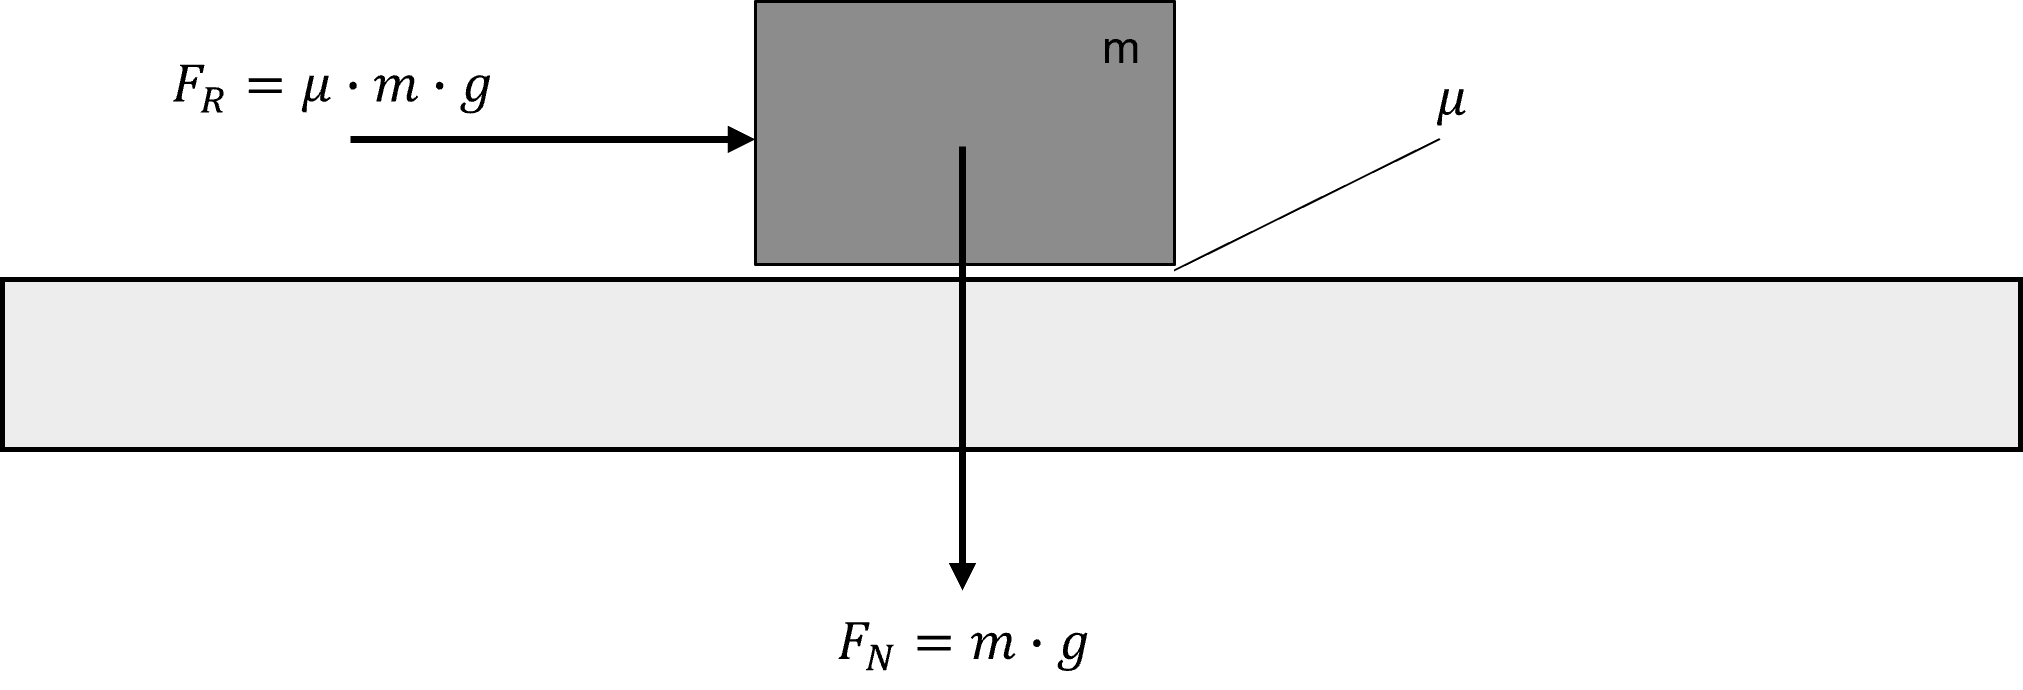 Darstellung eines horizontal bewegten Körpers und dessen Reibkraft